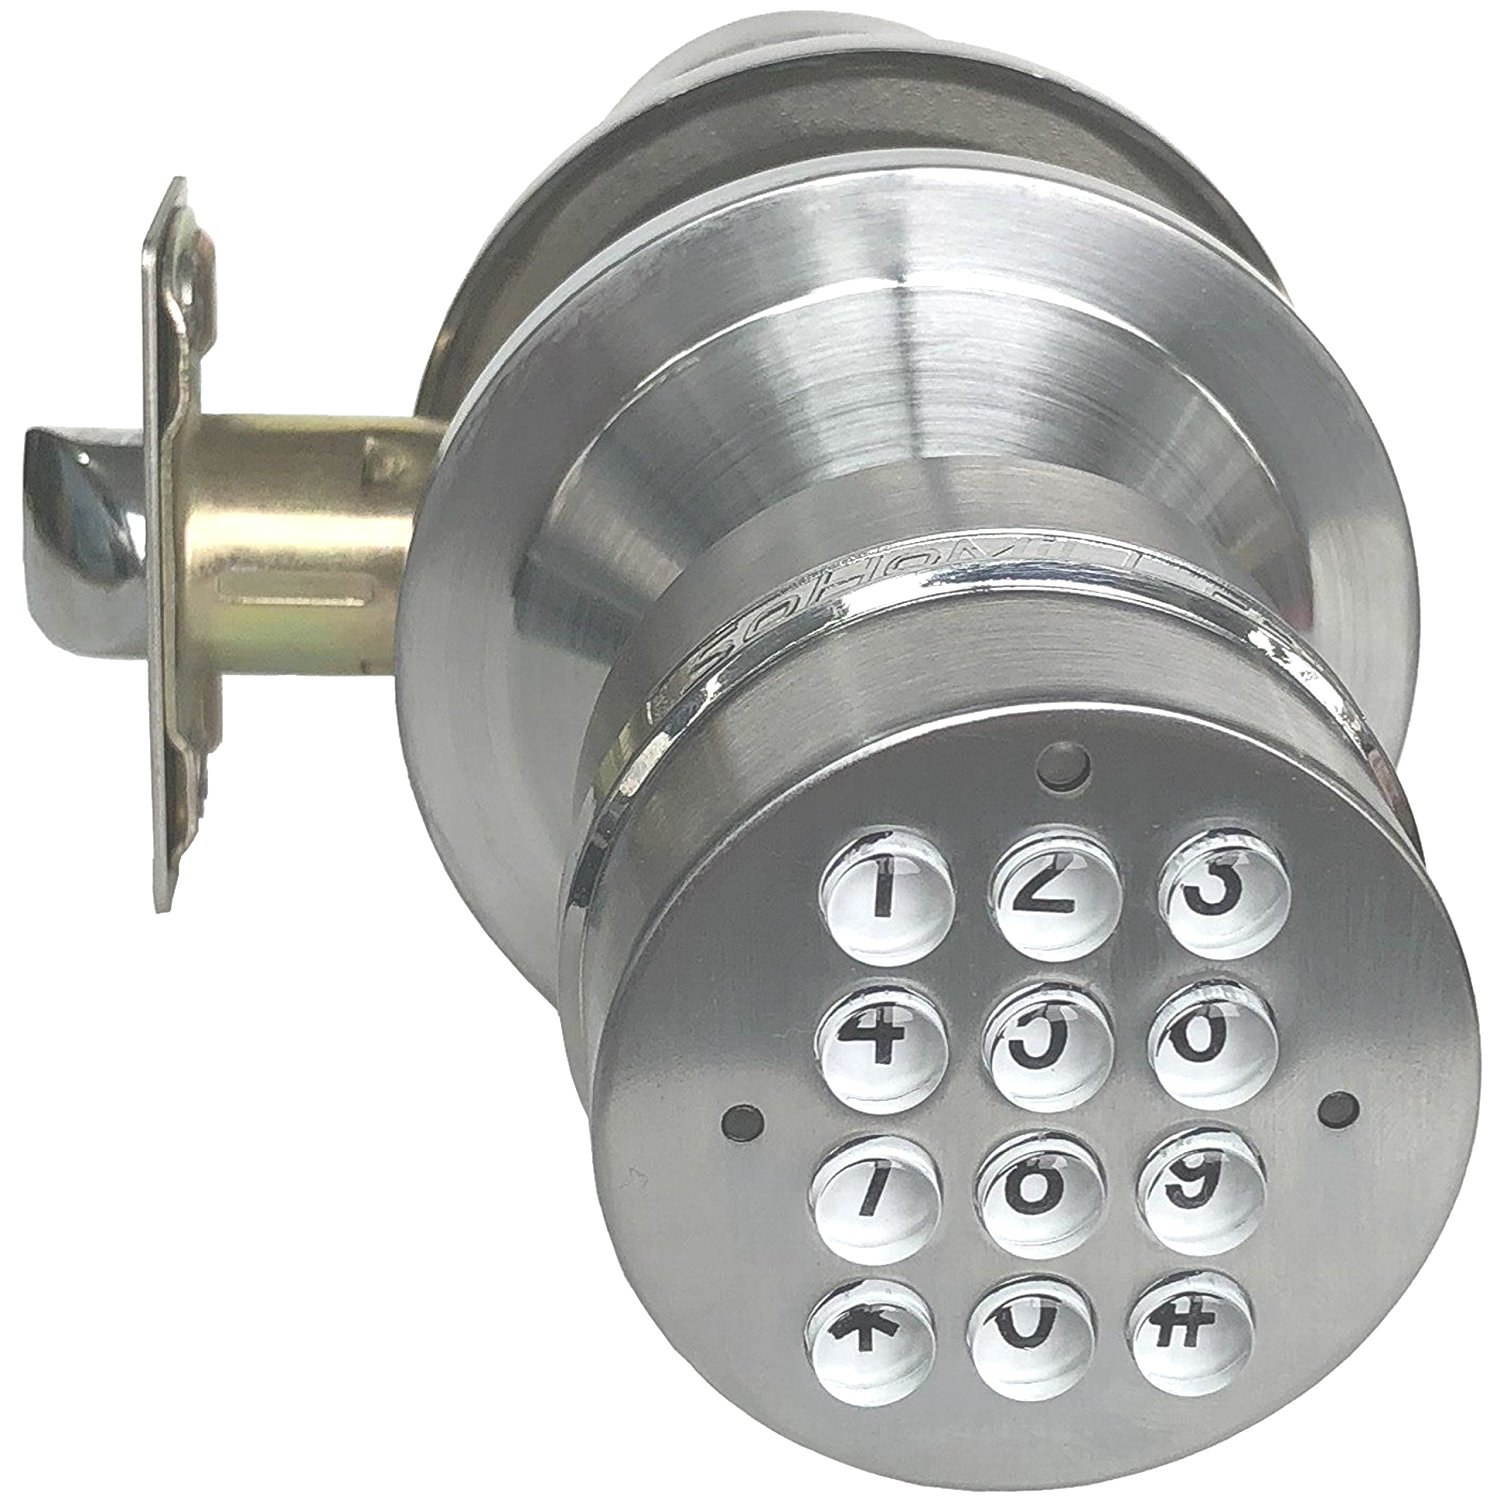 SoHoMiLL Digital Door Knob (Spring Latch LOCK; Not Smartphone Connected; Not Deadbolt), Satin Nickel